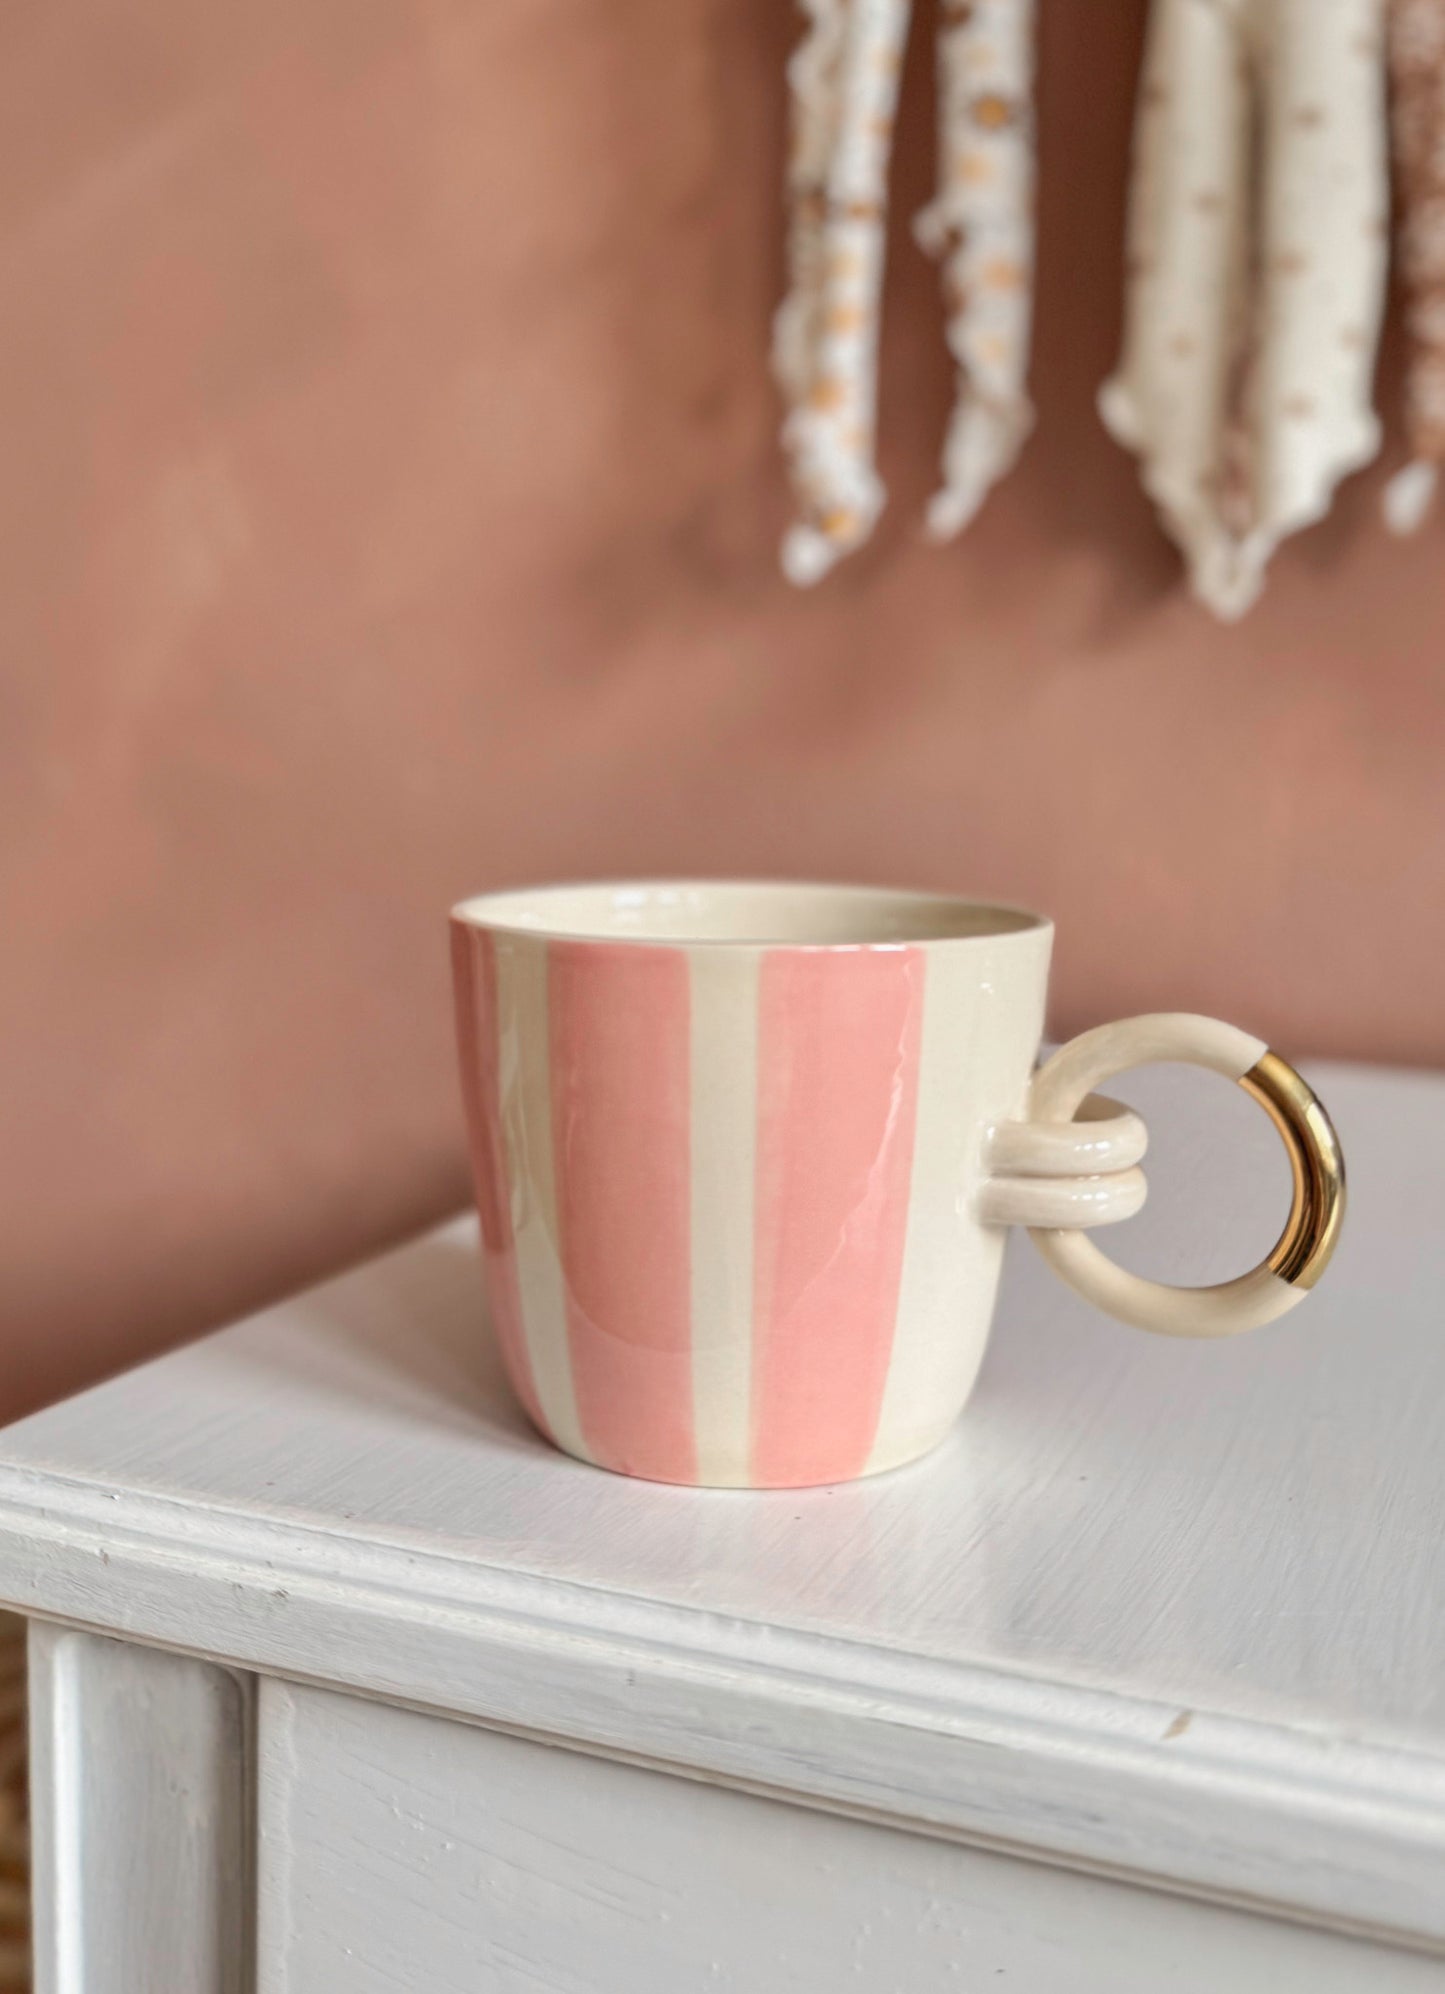 Coffee mug - pink